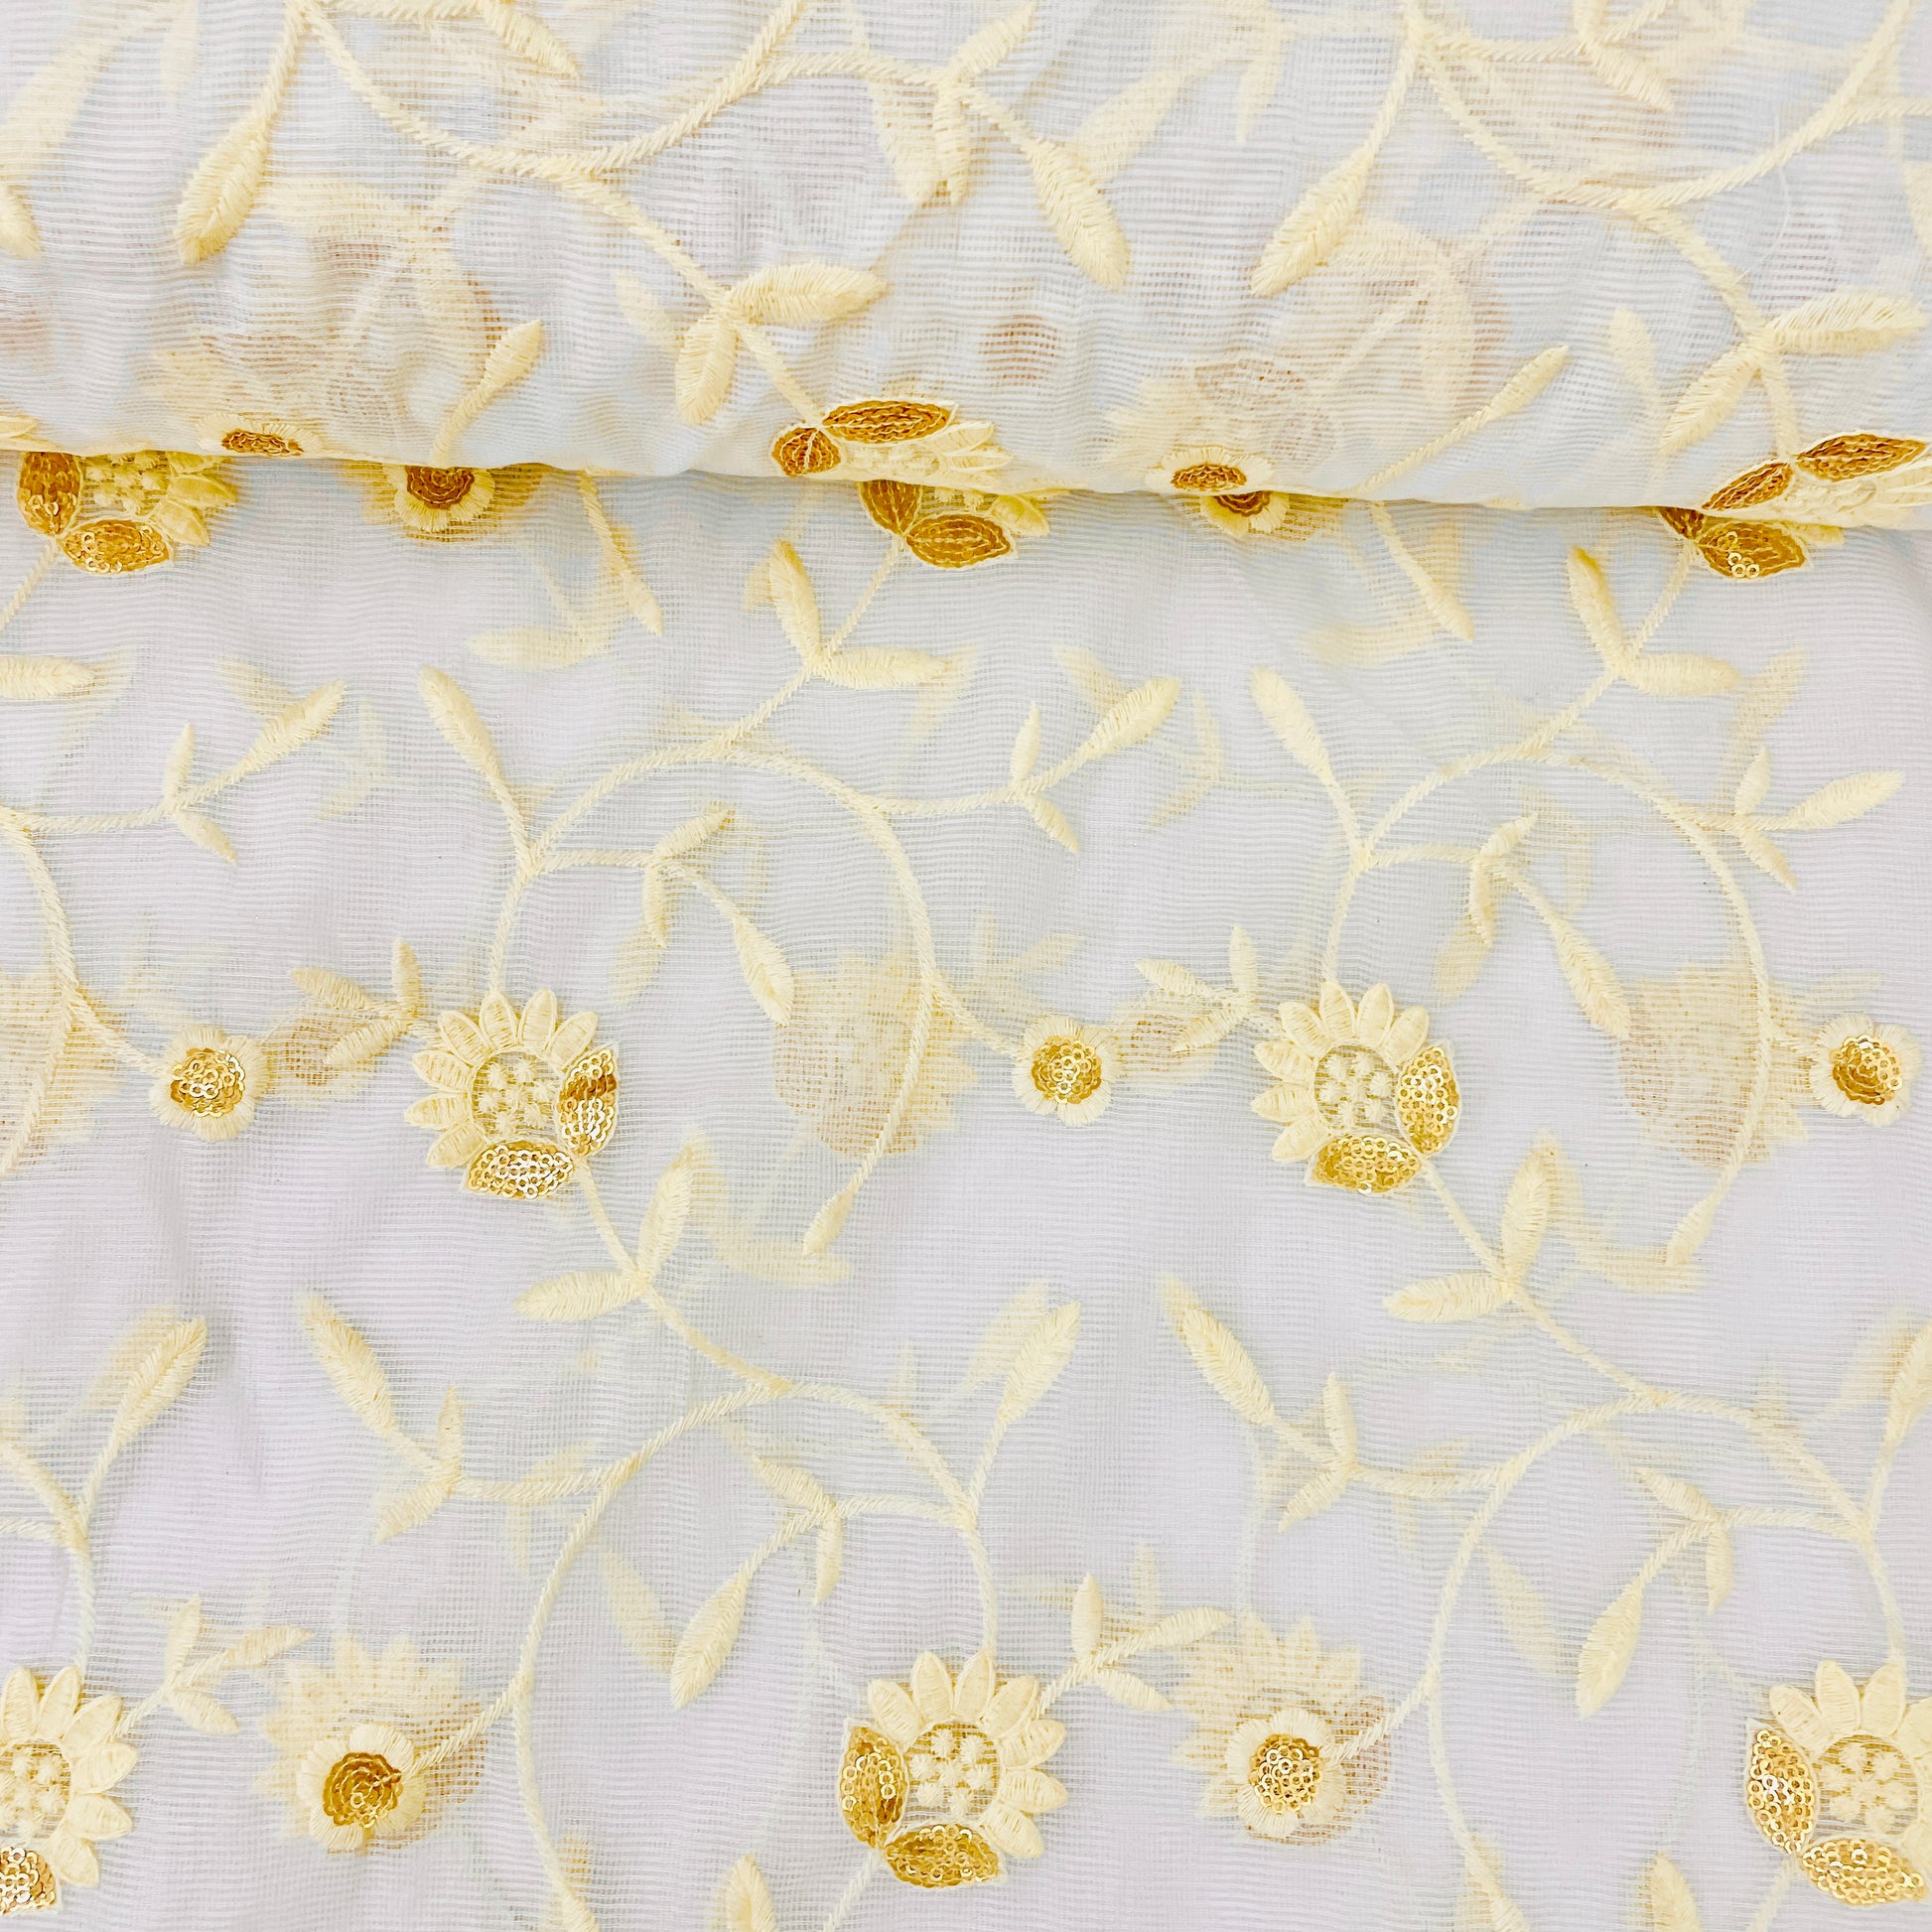 White Thread Embrodiery Kota Cotton Fabric - TradeUNO